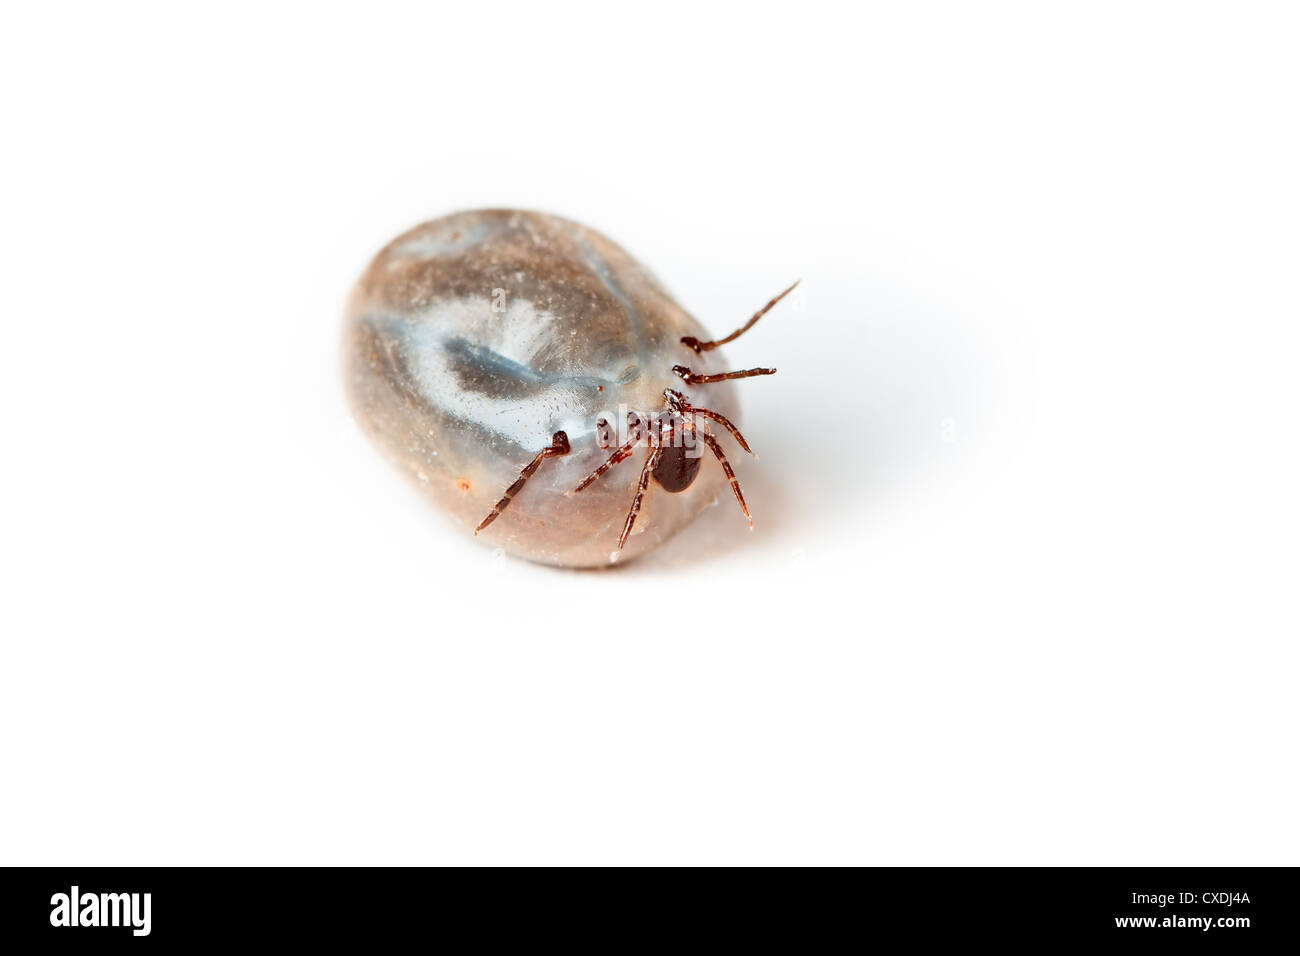 Tick - parasite on white background Stock Photo